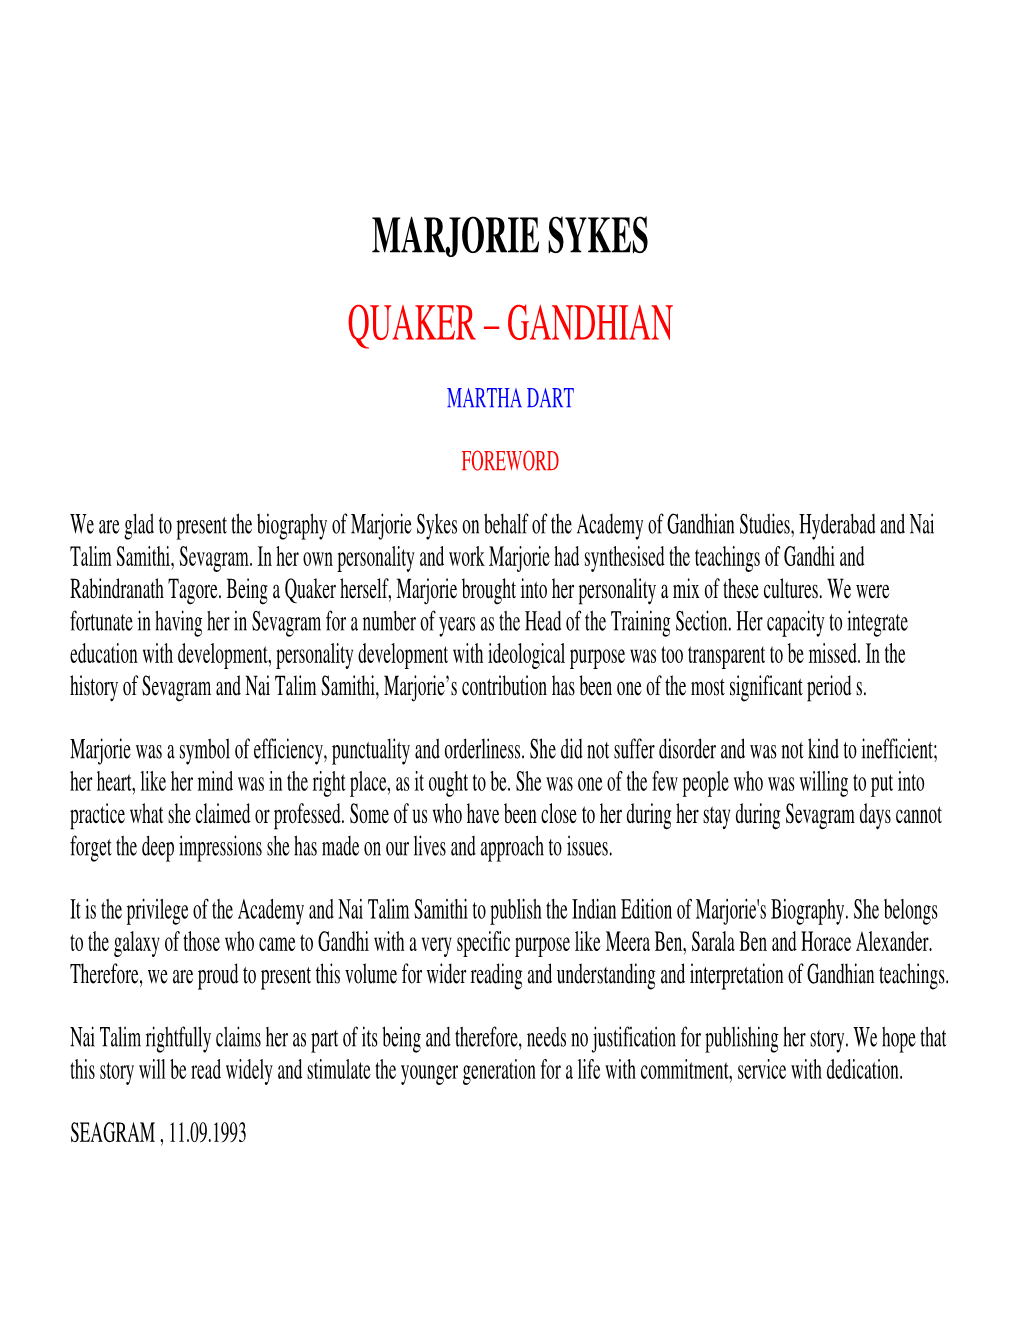 Marjorie Sykes Quaker – Gandhian